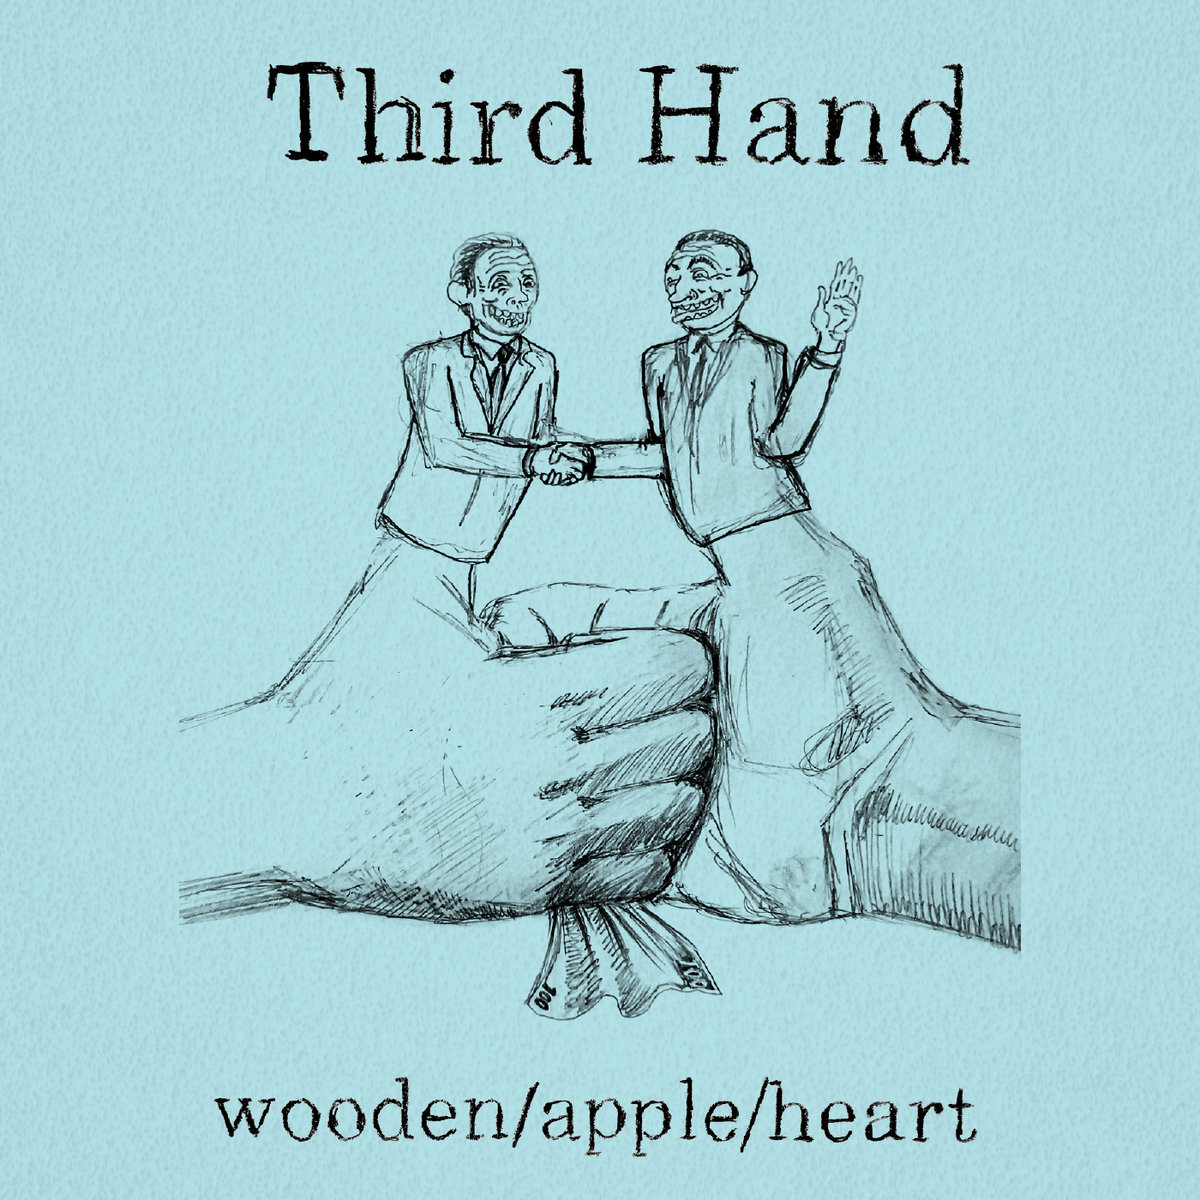 * Wooden/Apple/Heart - Third Hand